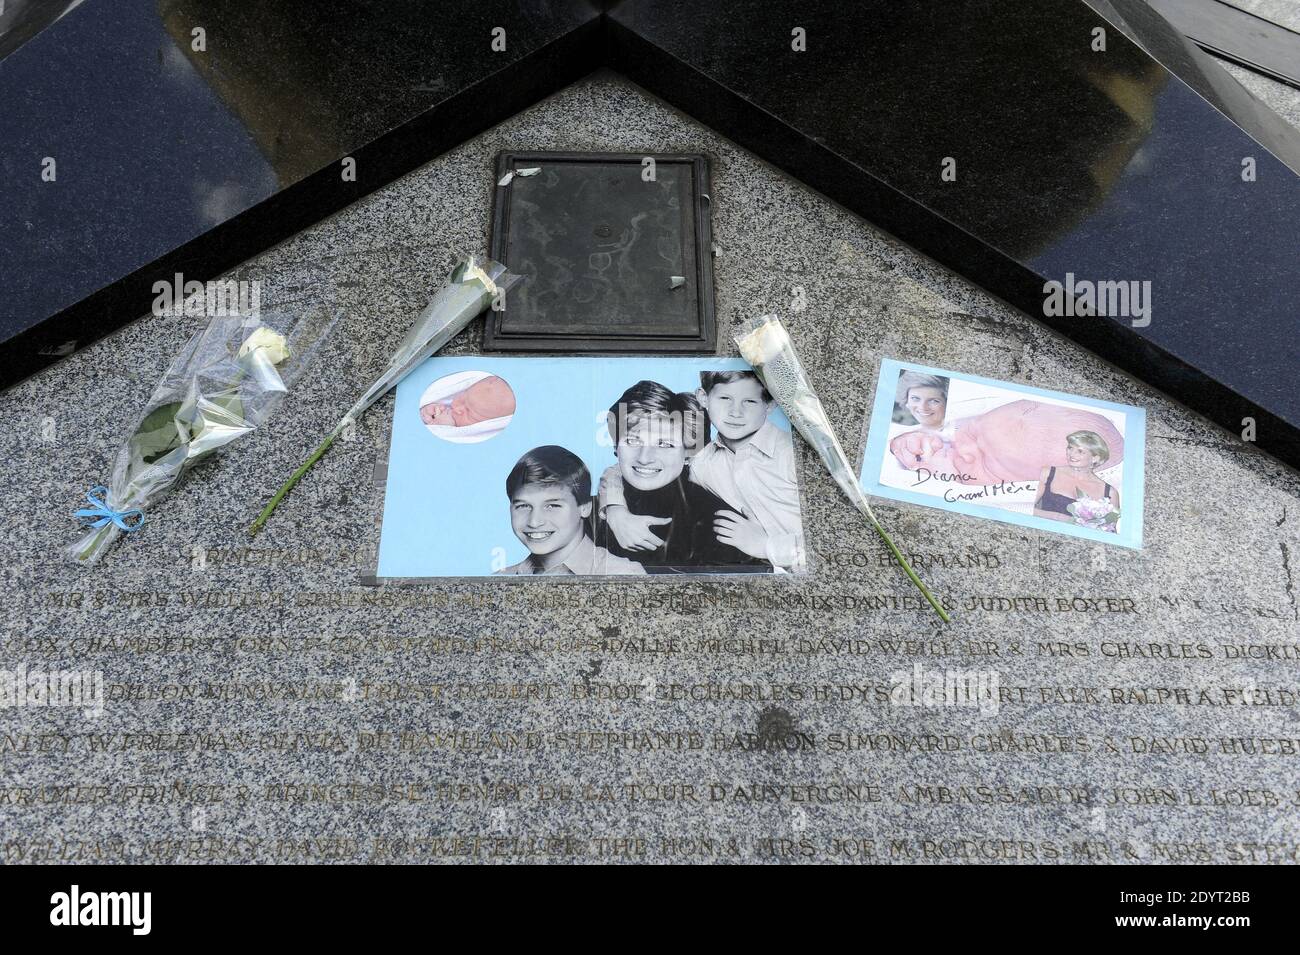 Vista della fiamma della libertà, che è diventata un memoriale non ufficiale della principessa Diana, è raffigurata prima del 16 ° anniversario della sua morte, vicino al sito del crash auto nel tunnel Pont de l'Alma, a Parigi, Francia il 29 agosto 2013. Foto di Mousse/ABACAPRESS.COM Foto Stock